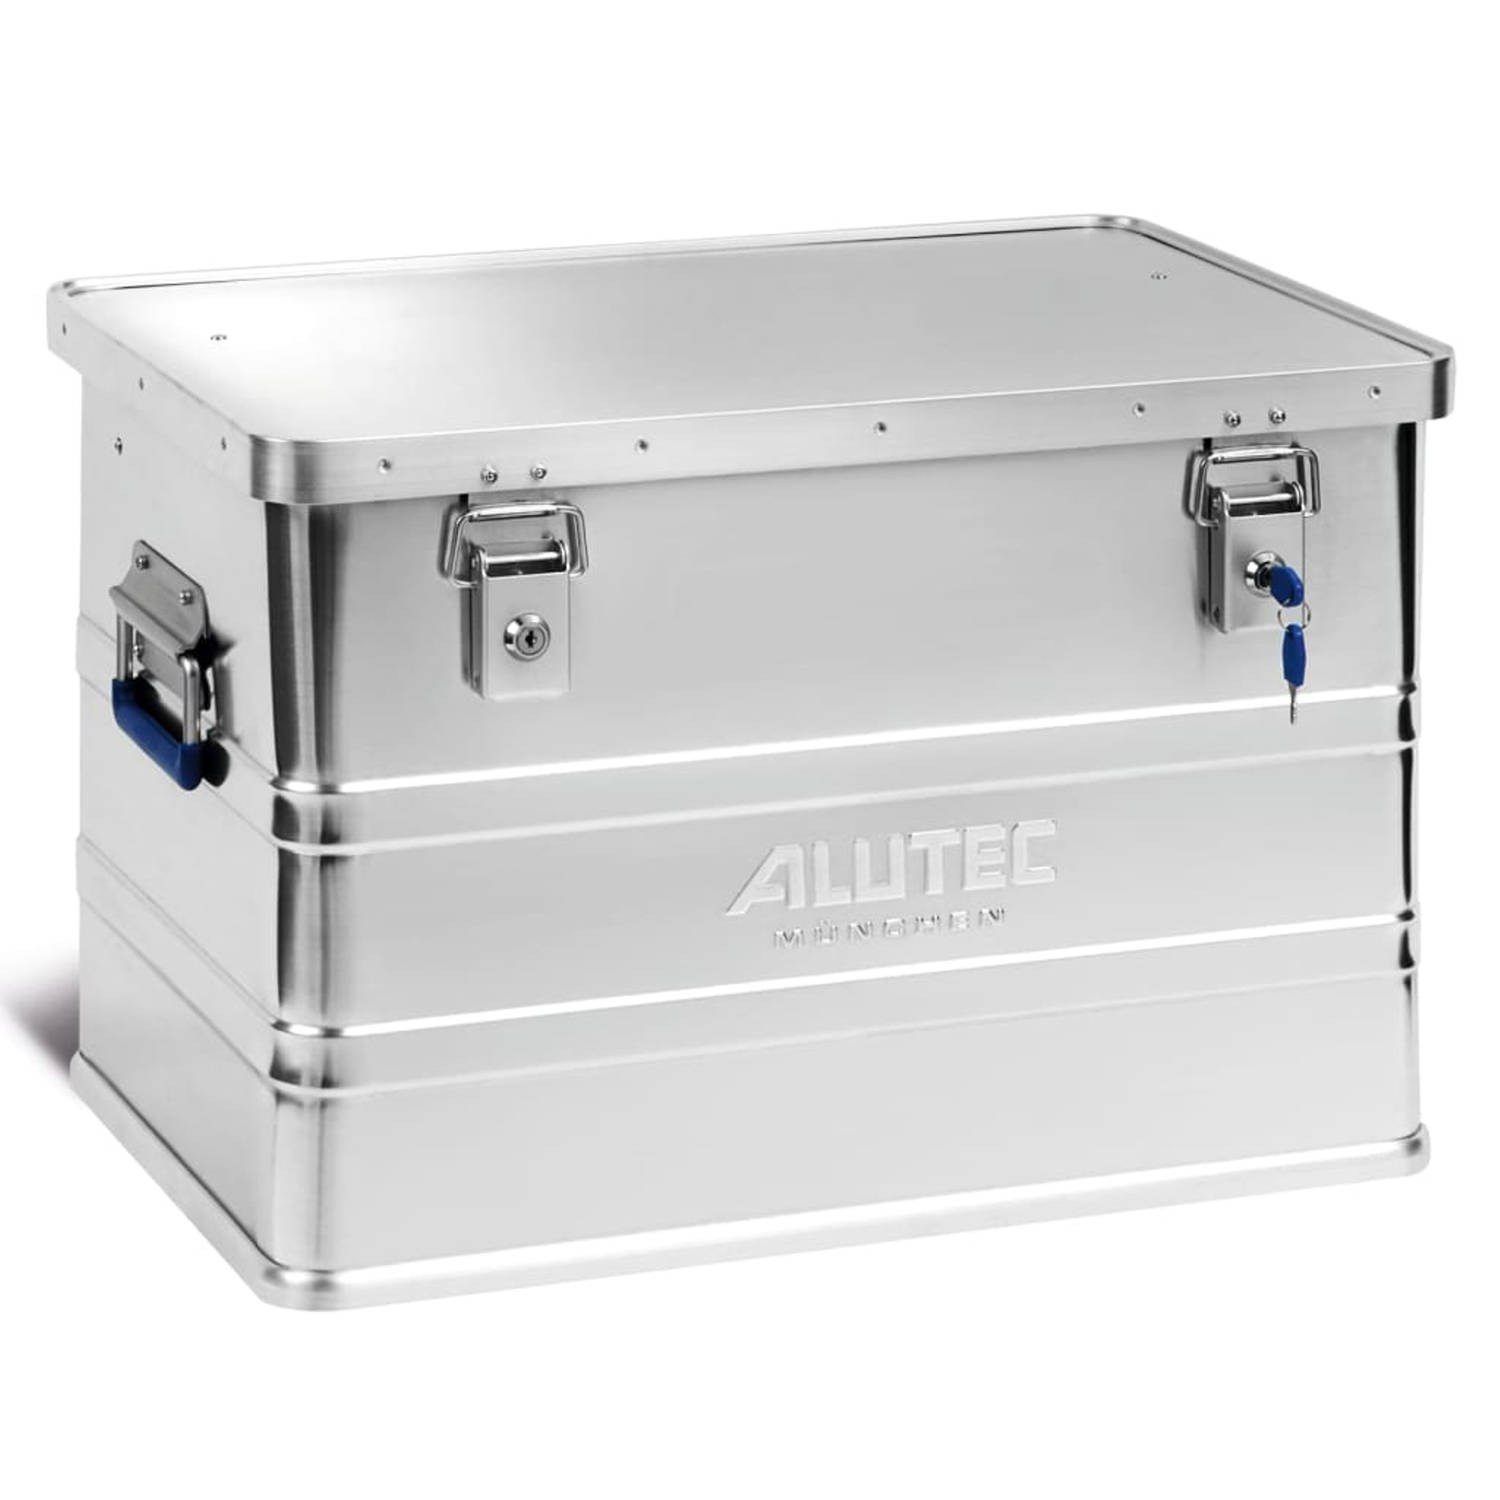 ALUTEC Opbergbox CLASSIC 68 L aluminium